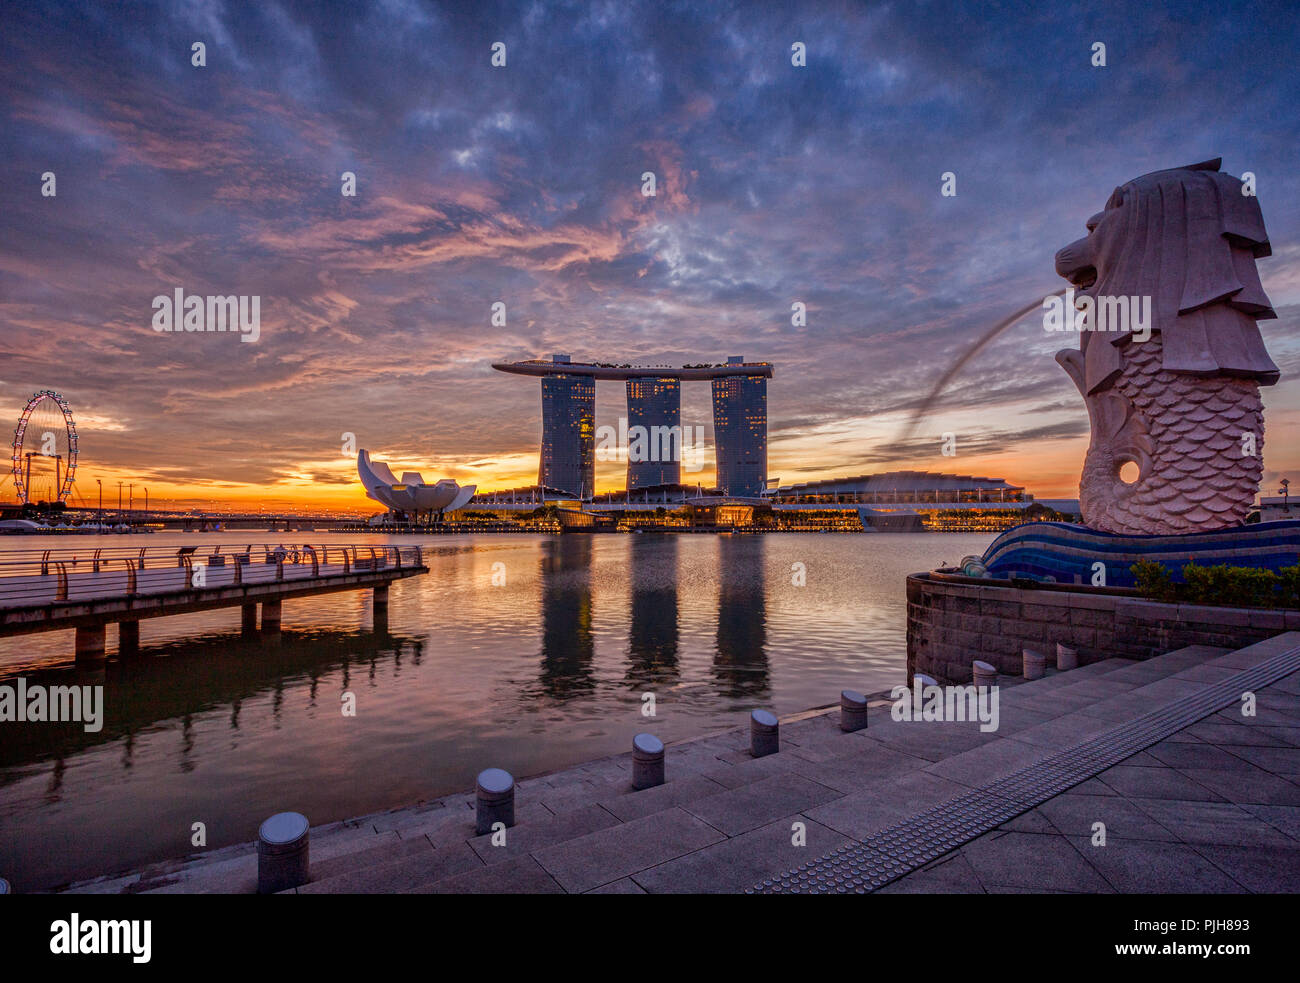 Singapour au lever du soleil, avec le Merlion, le Marina Bay Sands, l'art et musée des sciences et le Singapore Flyer, le tout sous un ciel dramatique. Banque D'Images